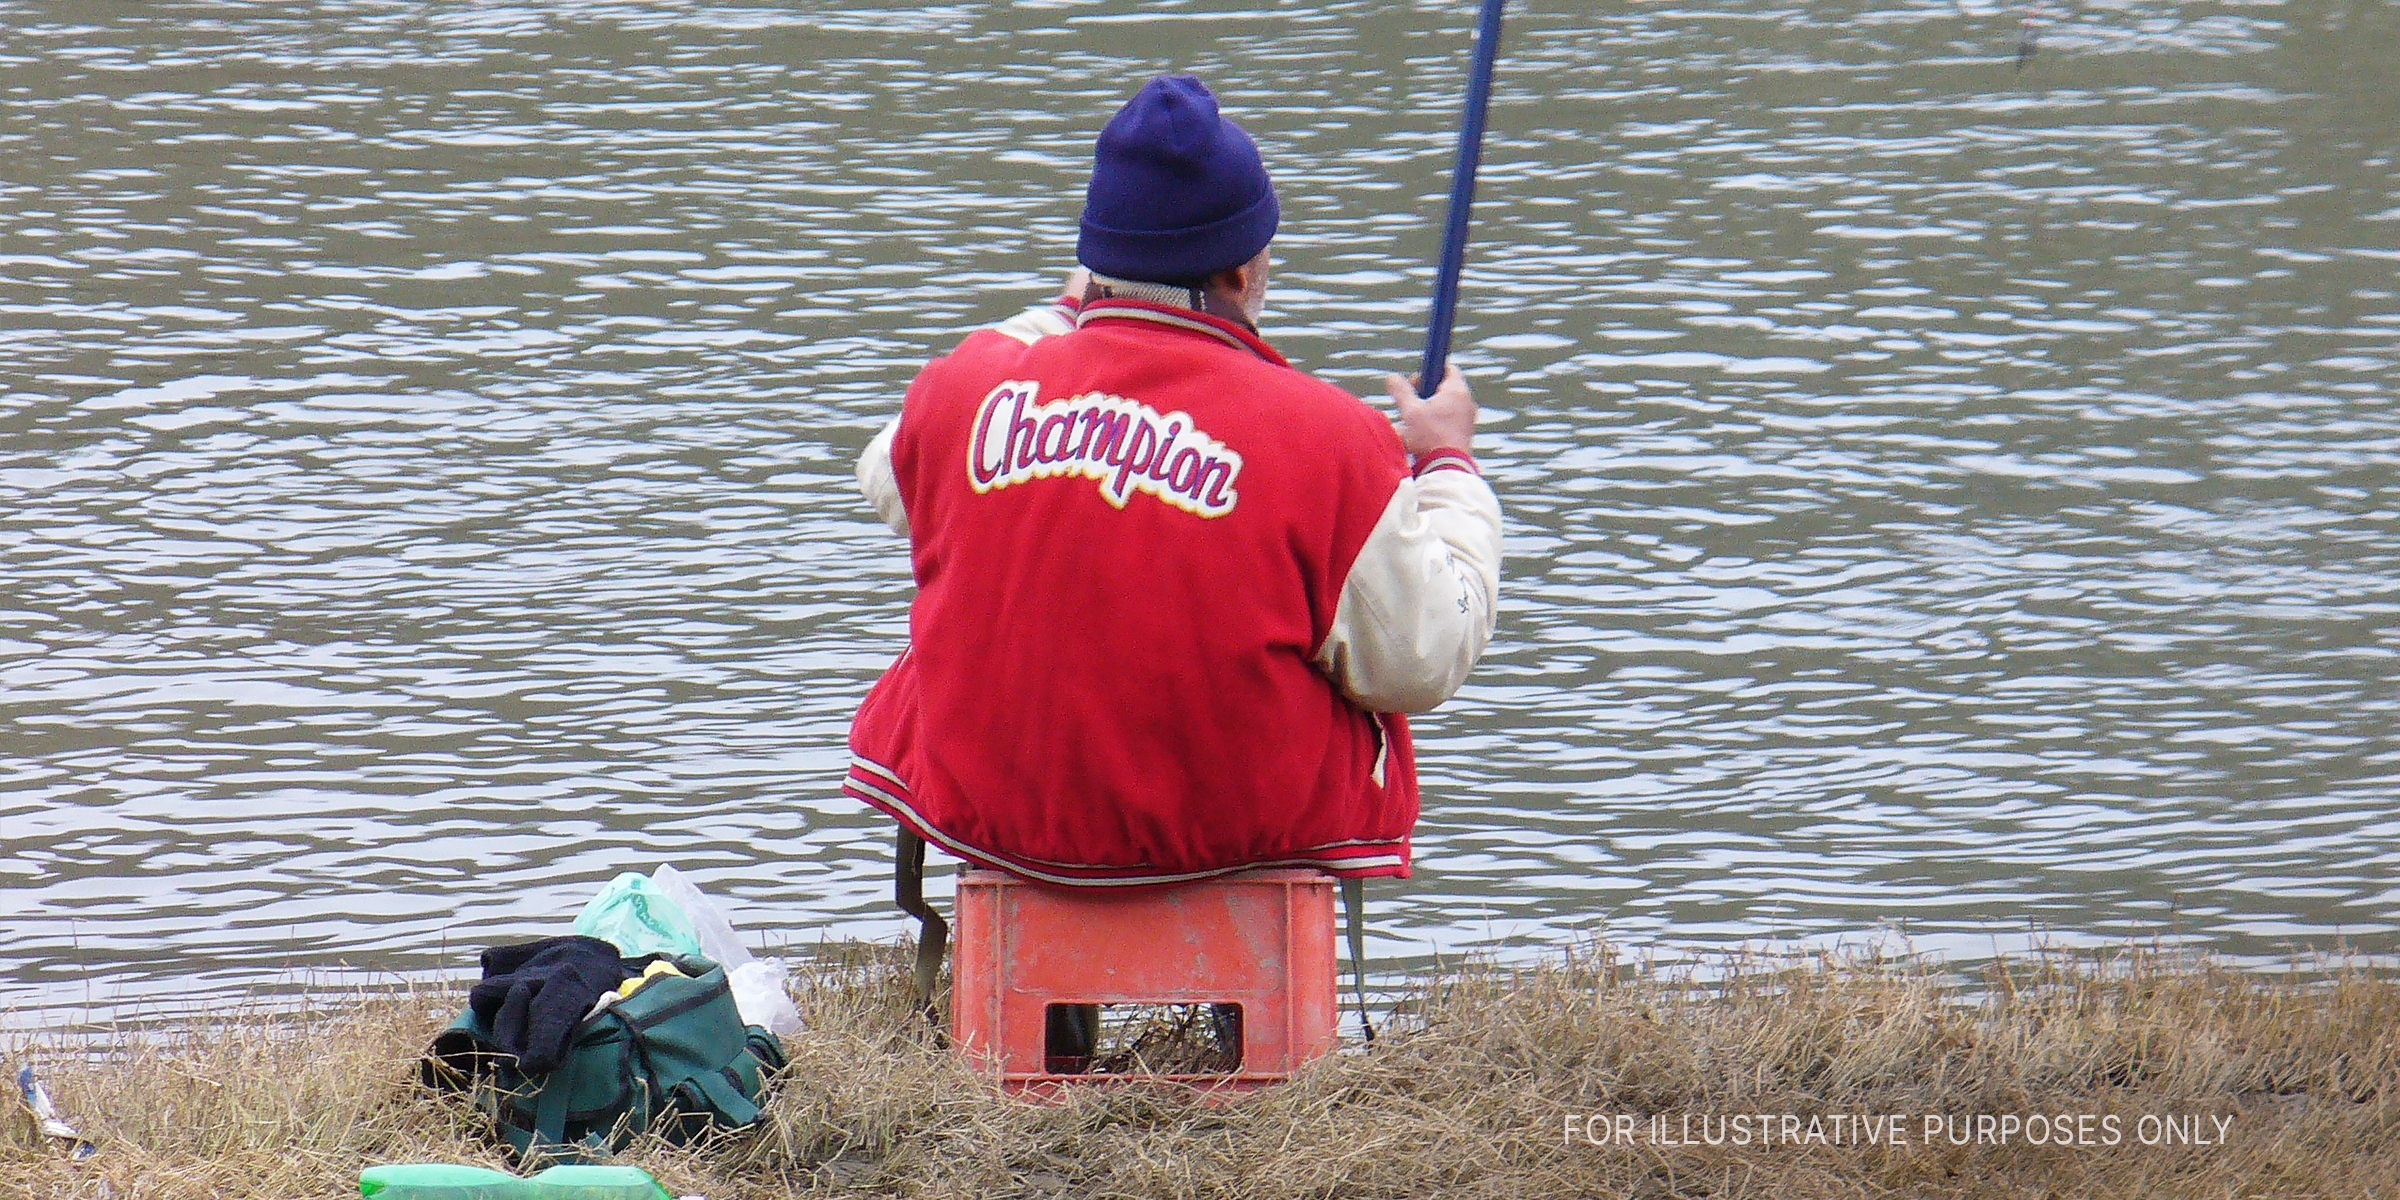 An older man fishing at a river | Source: Flickr / Novica (CC BY-SA 2.0)